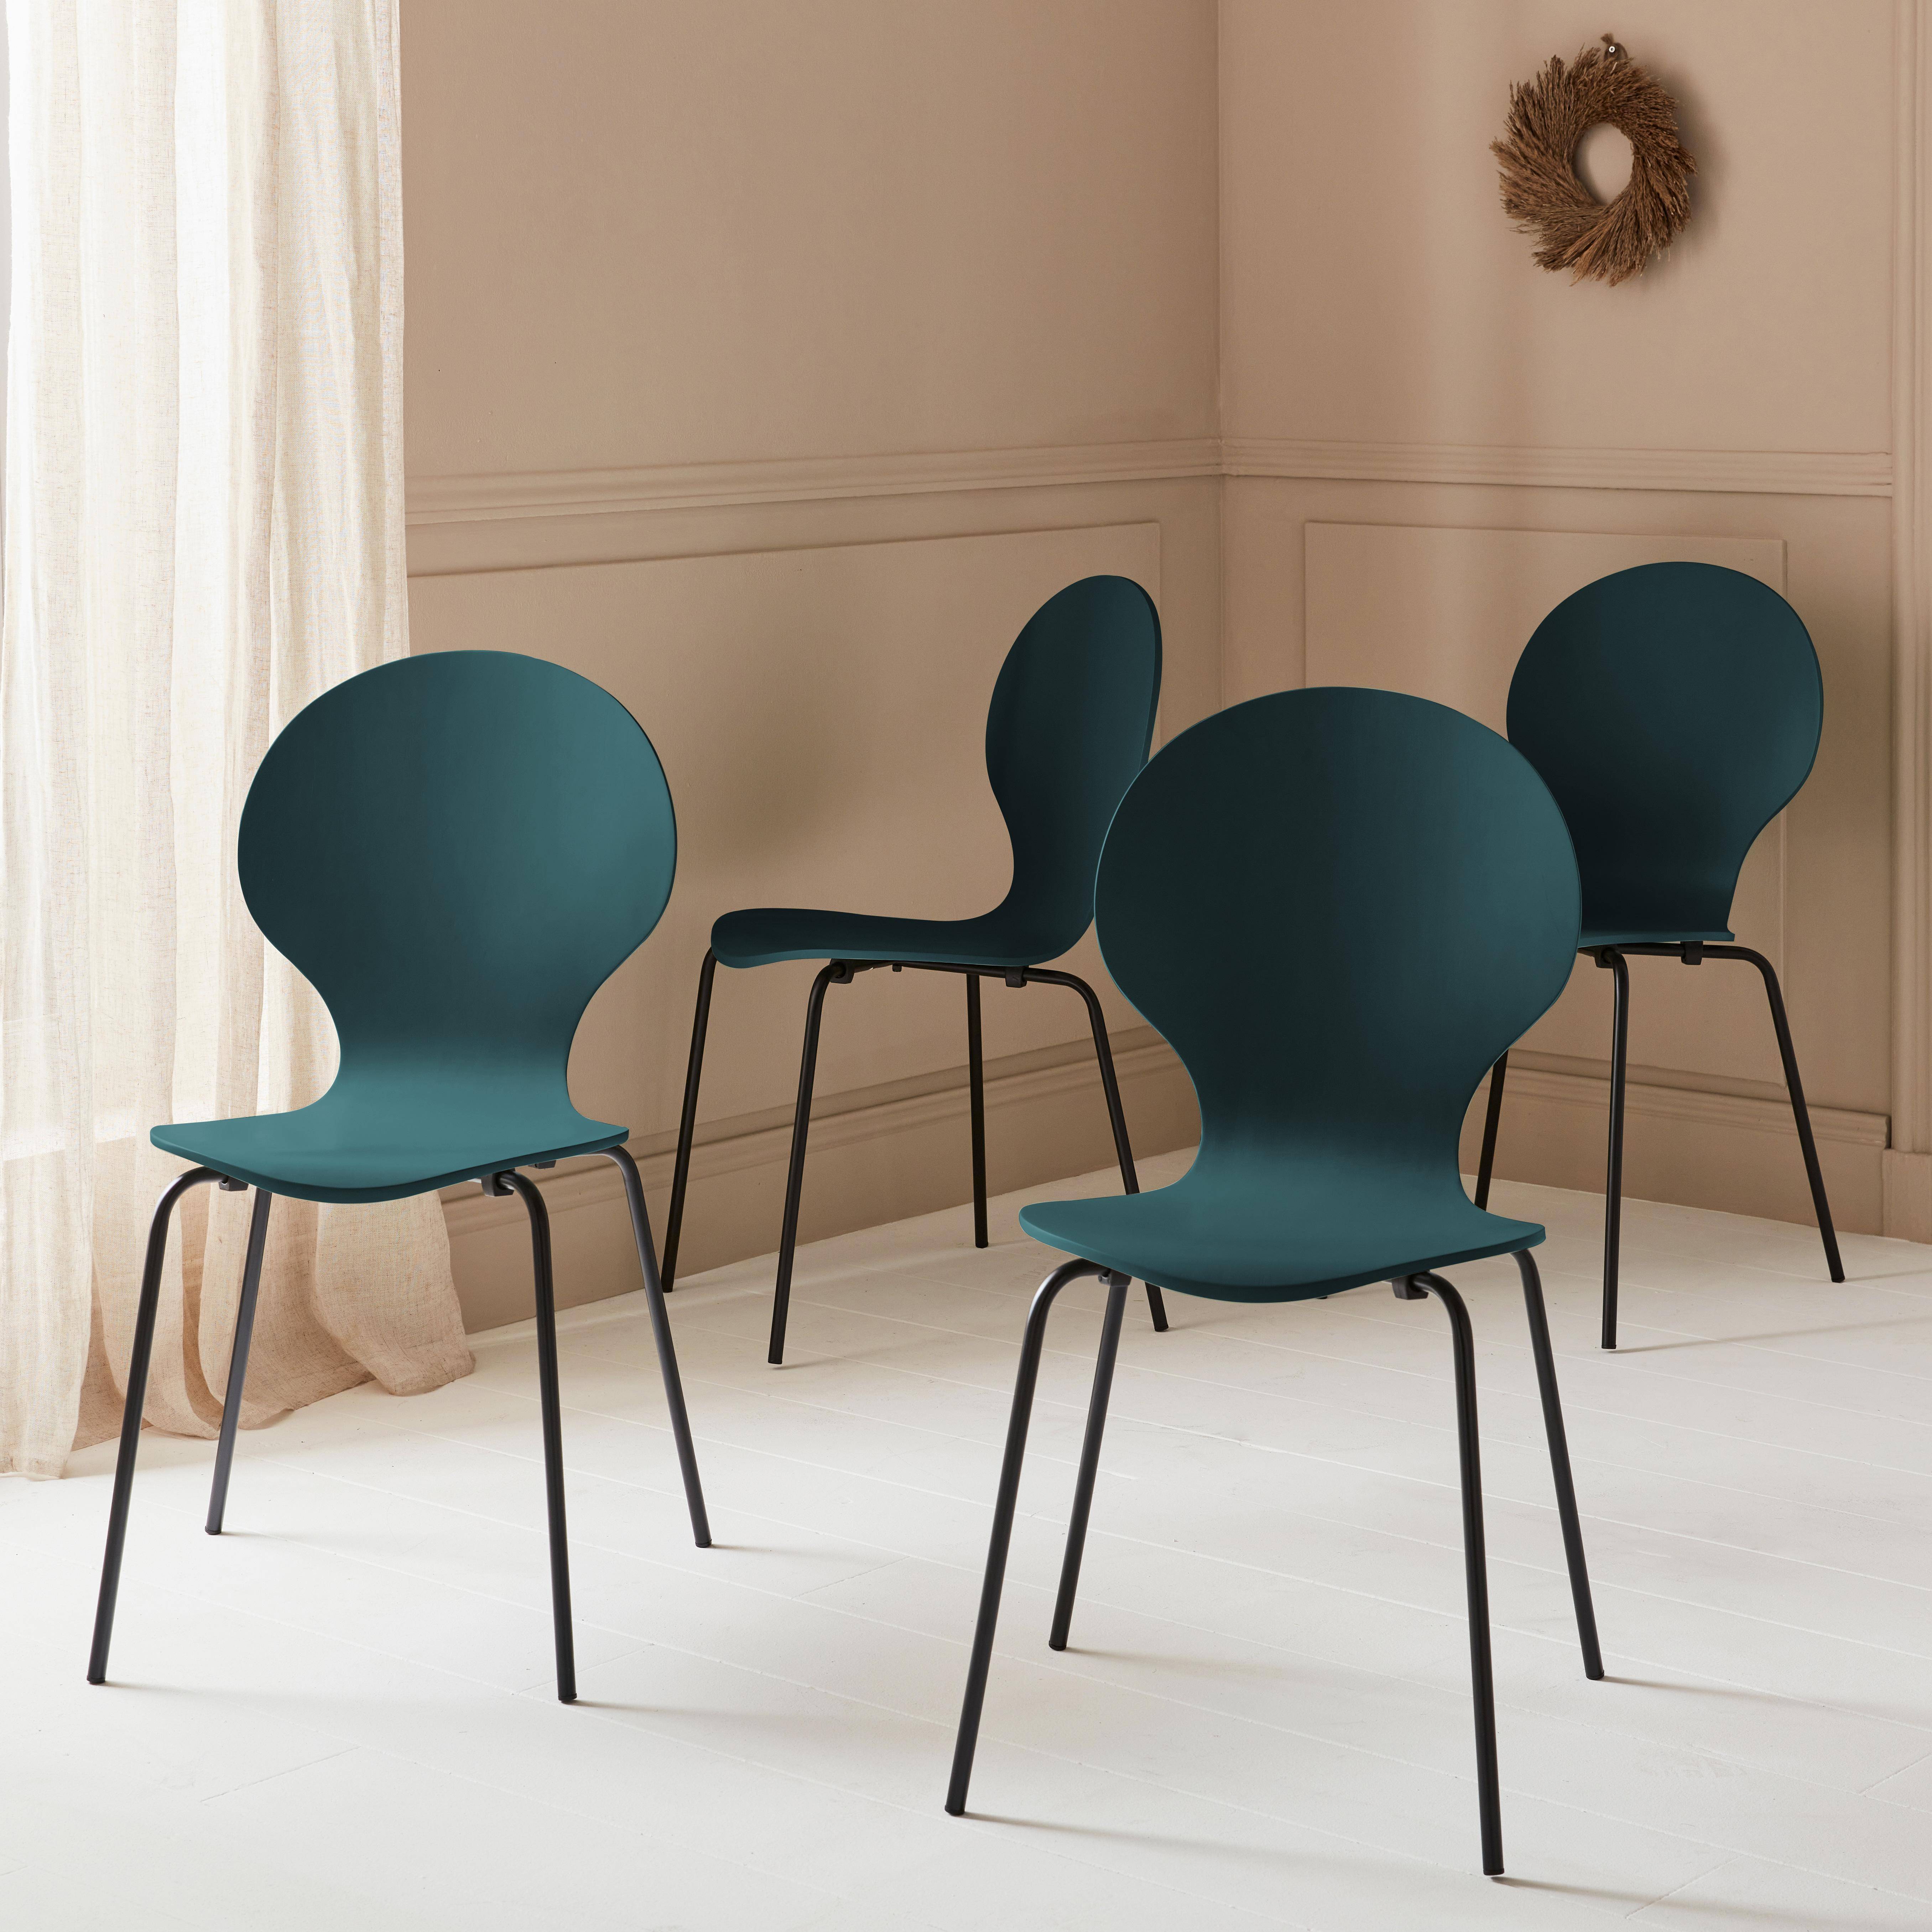 Lot de 4 chaises bleues, rétro empilables, bois d'hévéa et contreplaqué, pieds en acier, Naomi, L 43 x P 48 x H 87cm,sweeek,Photo1